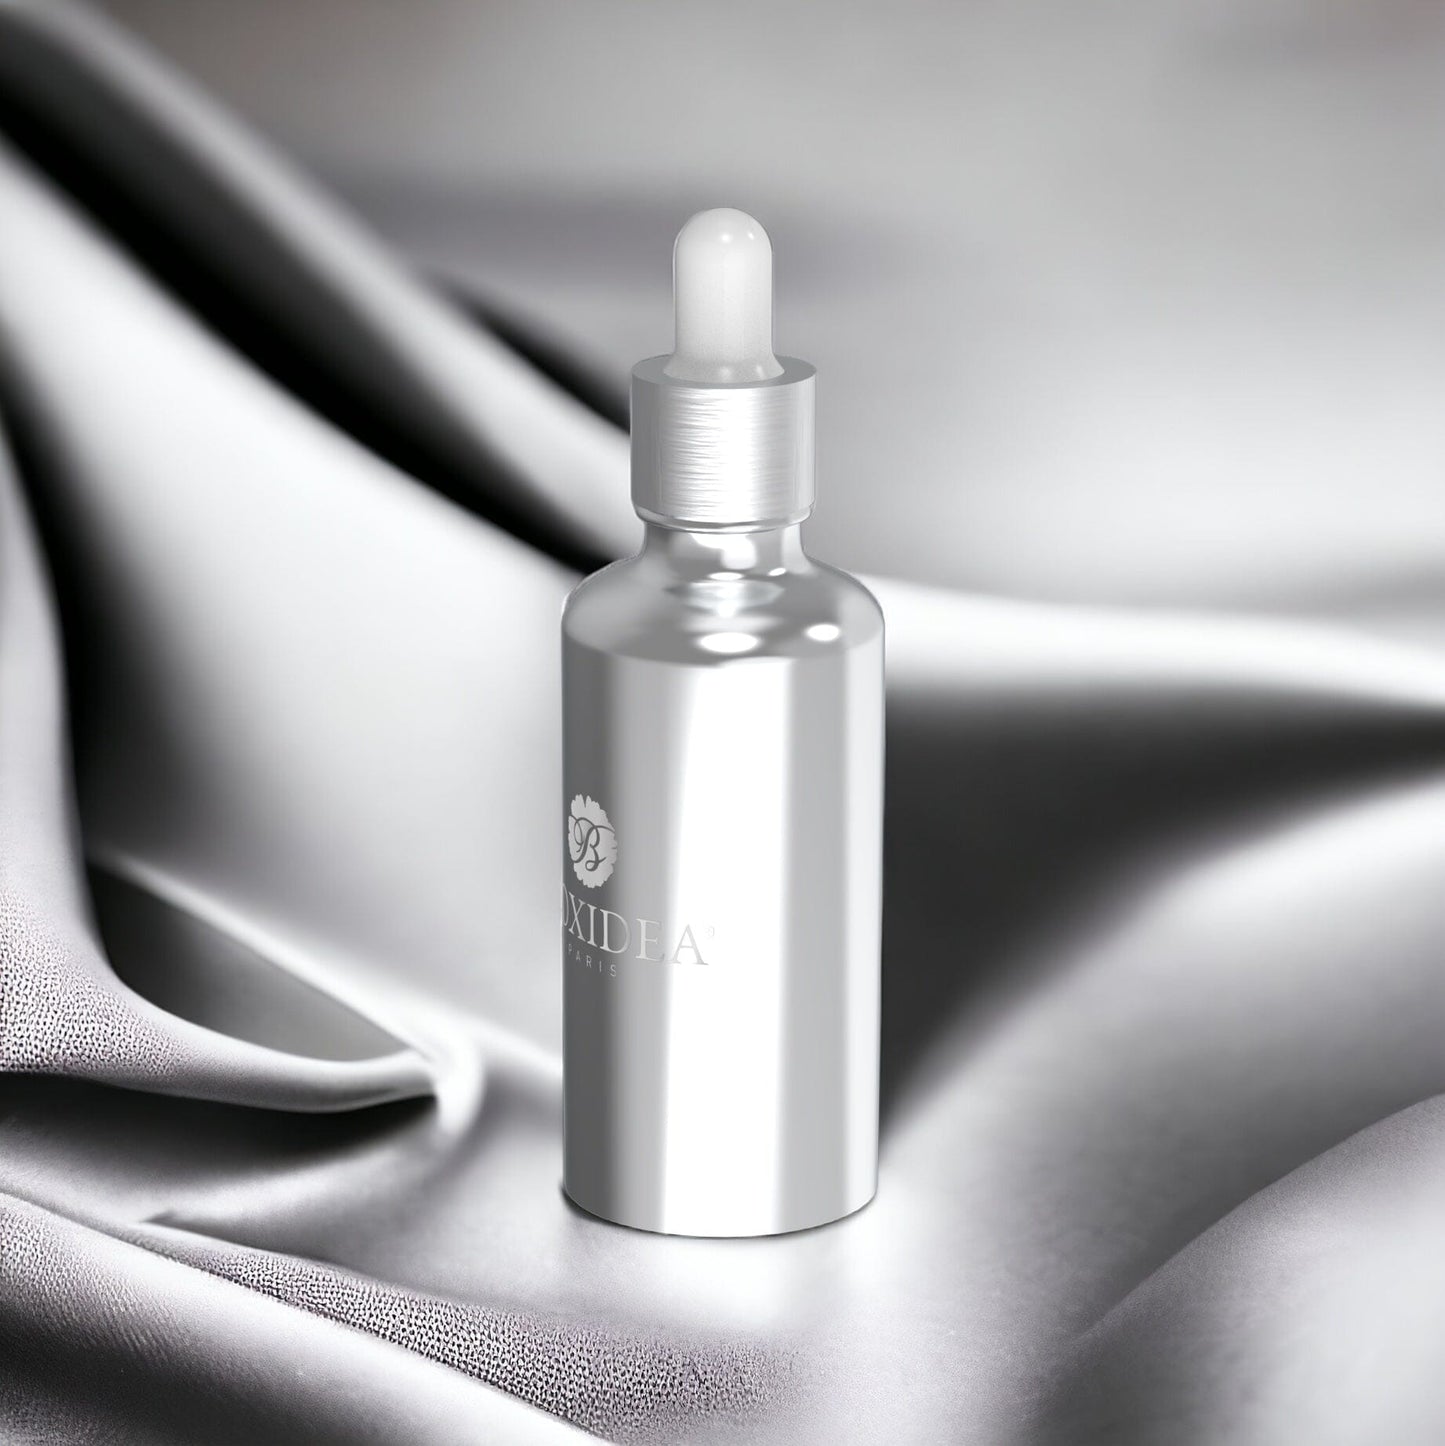 BIOXIDEA "Space Babe" Fragrance Refill Home Fragrances